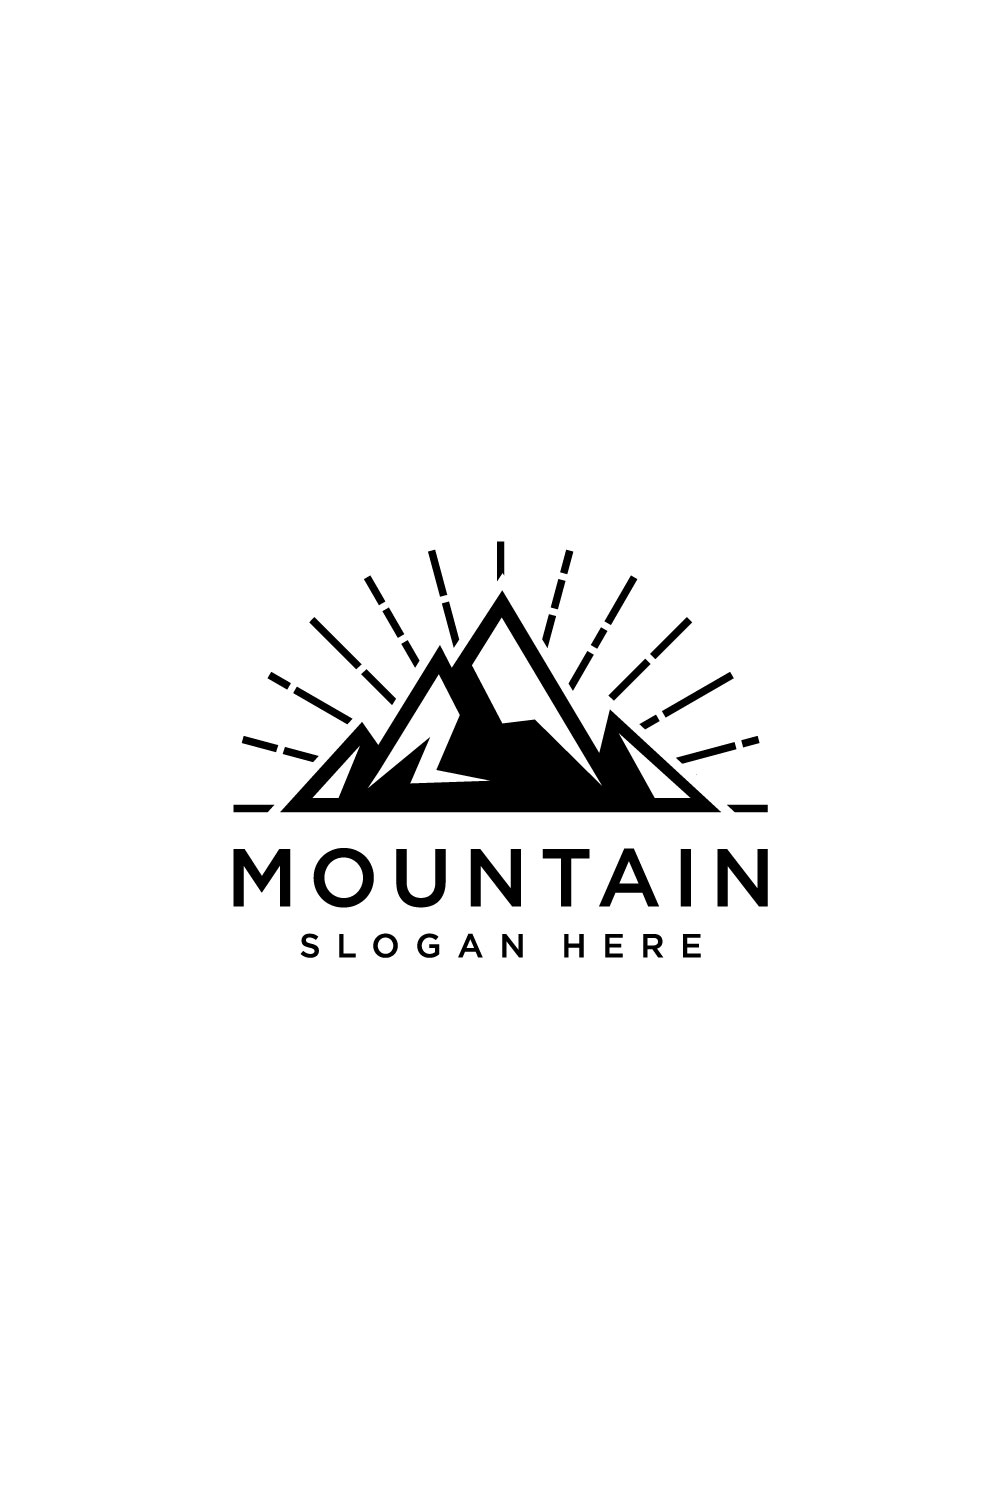 mountain logo design template vector pinterest preview image.